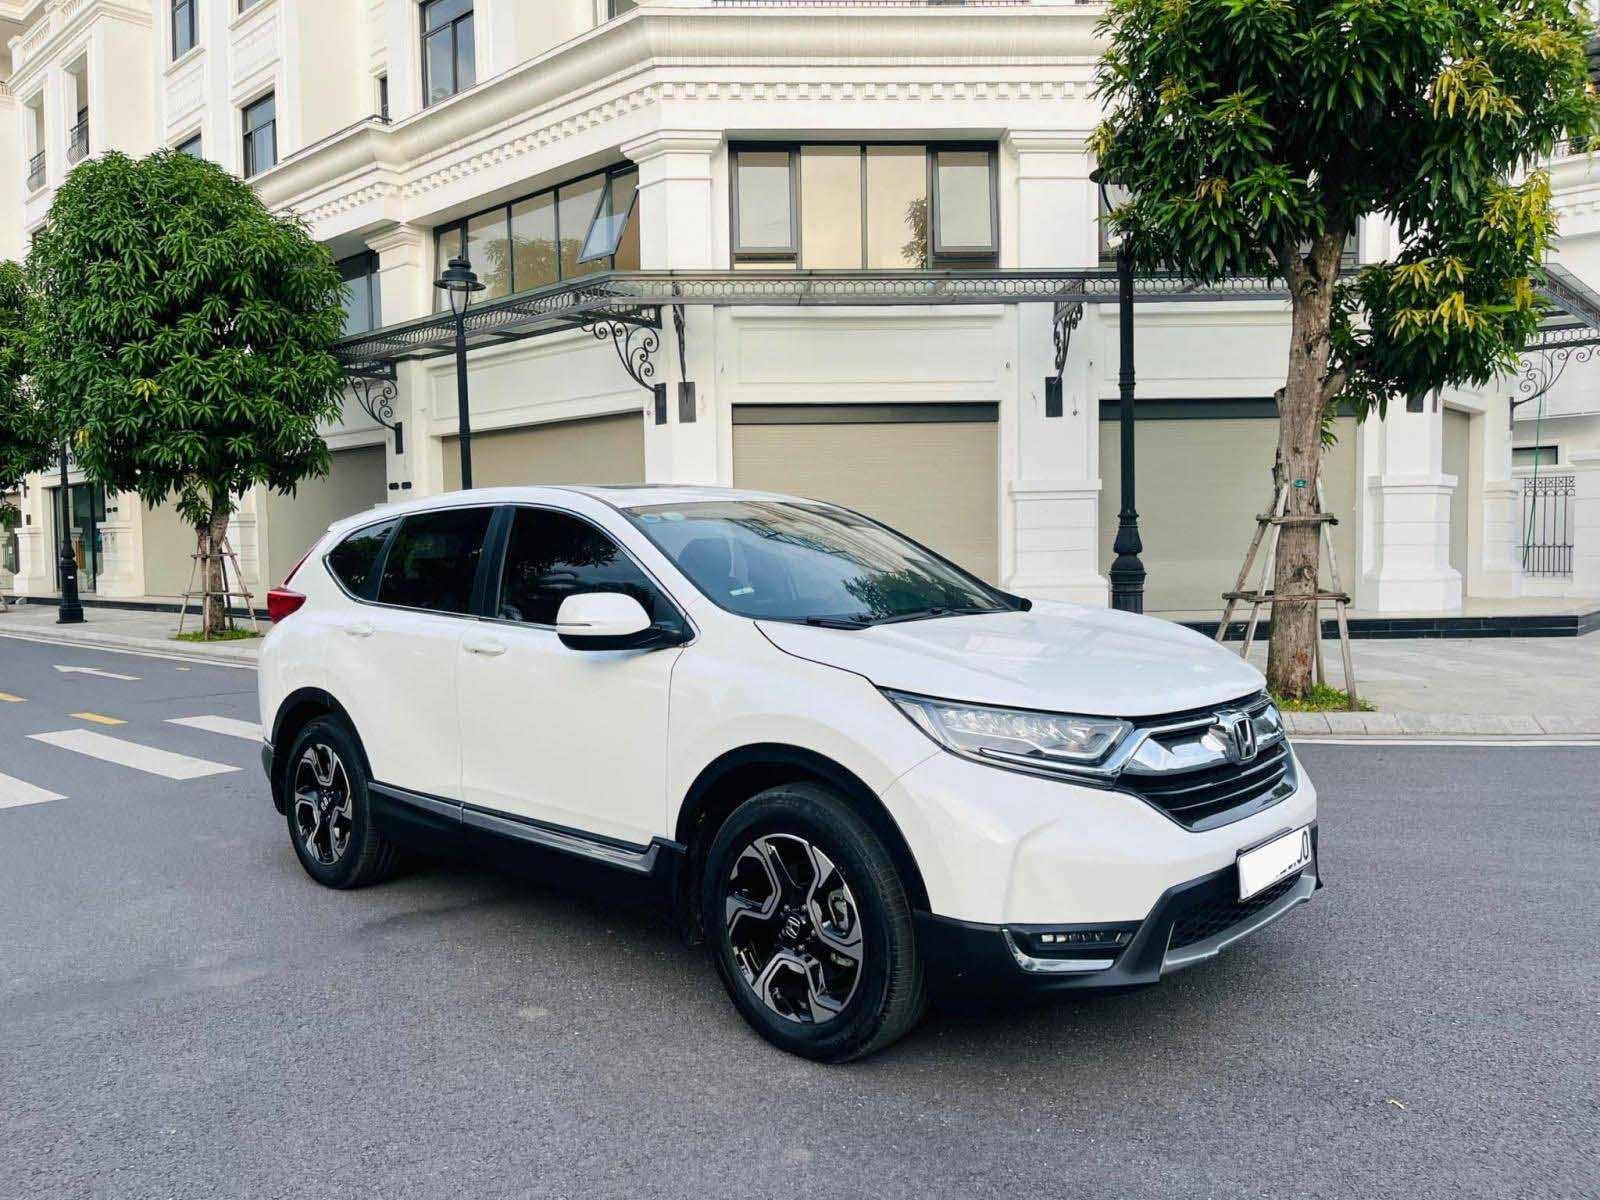 Honda CRV 2018 nhập khẩu cũ - có đáng để bạn xuống tiền không?